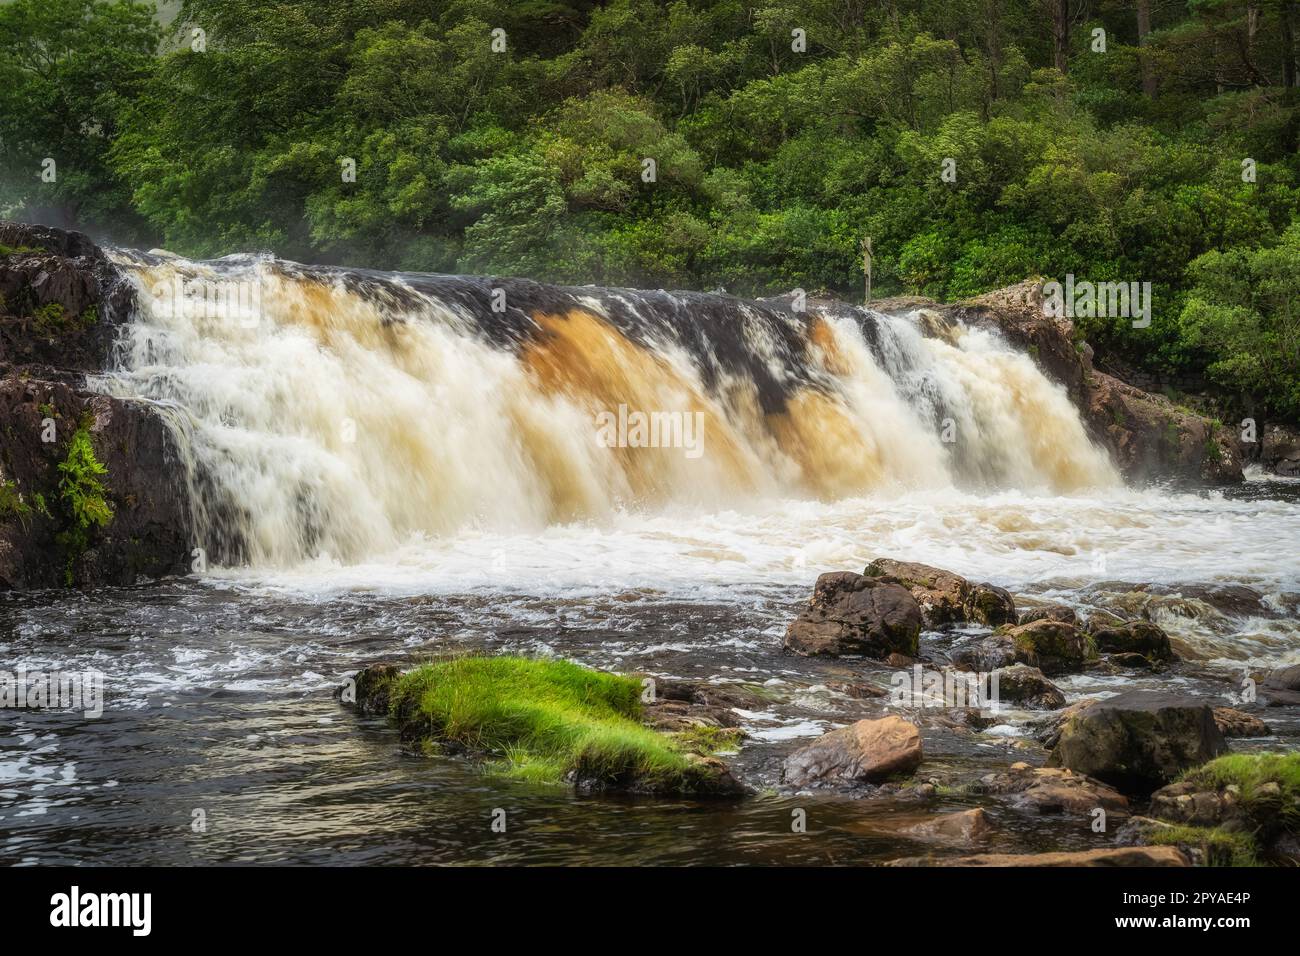 Chutes d'Aasleagh sur la rivière Erriff avec un foest vert en arrière-plan, Irlande Banque D'Images